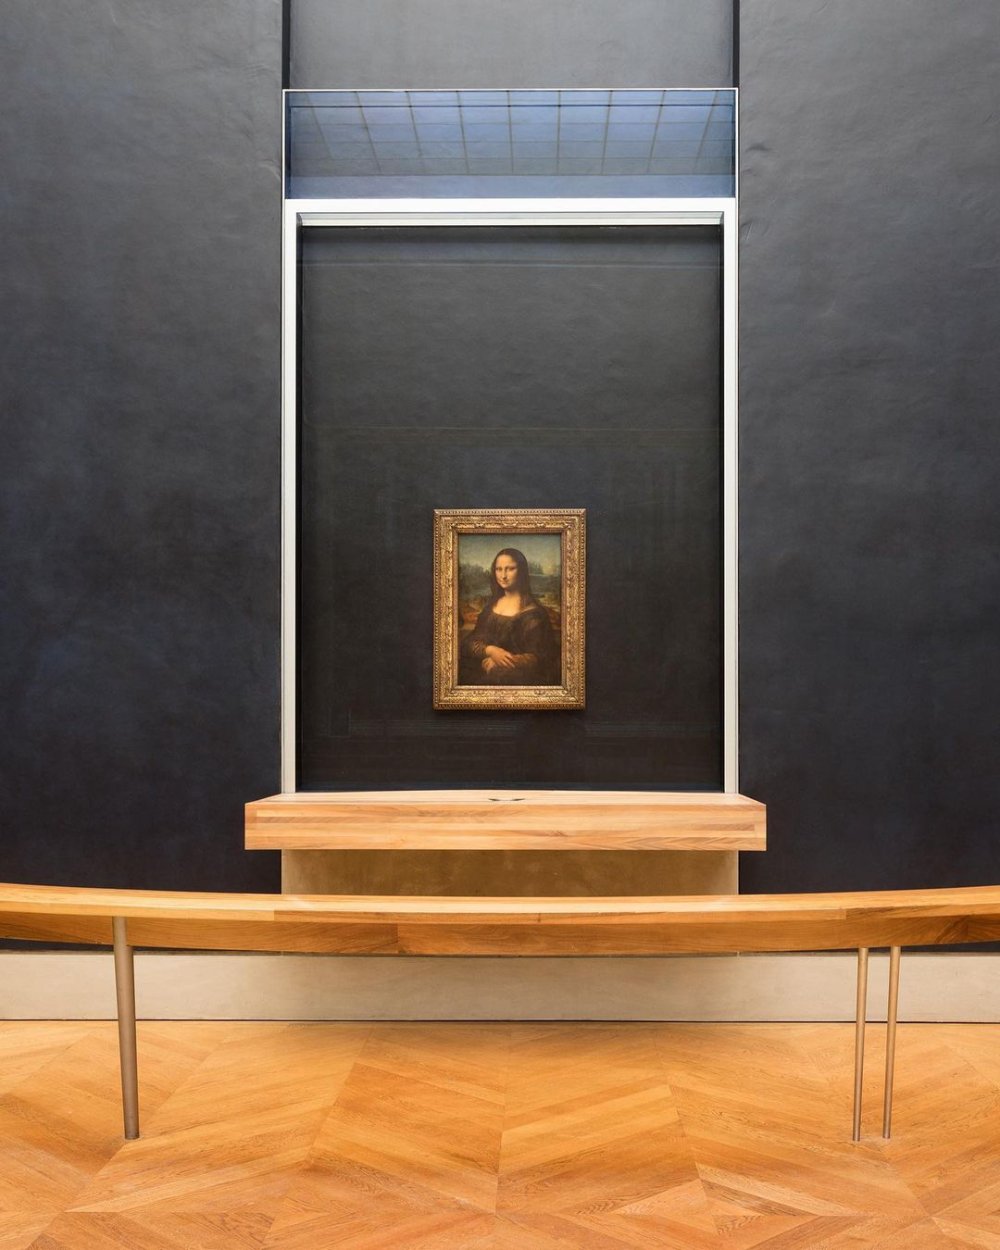 Fransa Kültür Bakanından "Mona Lisa" açıklaması